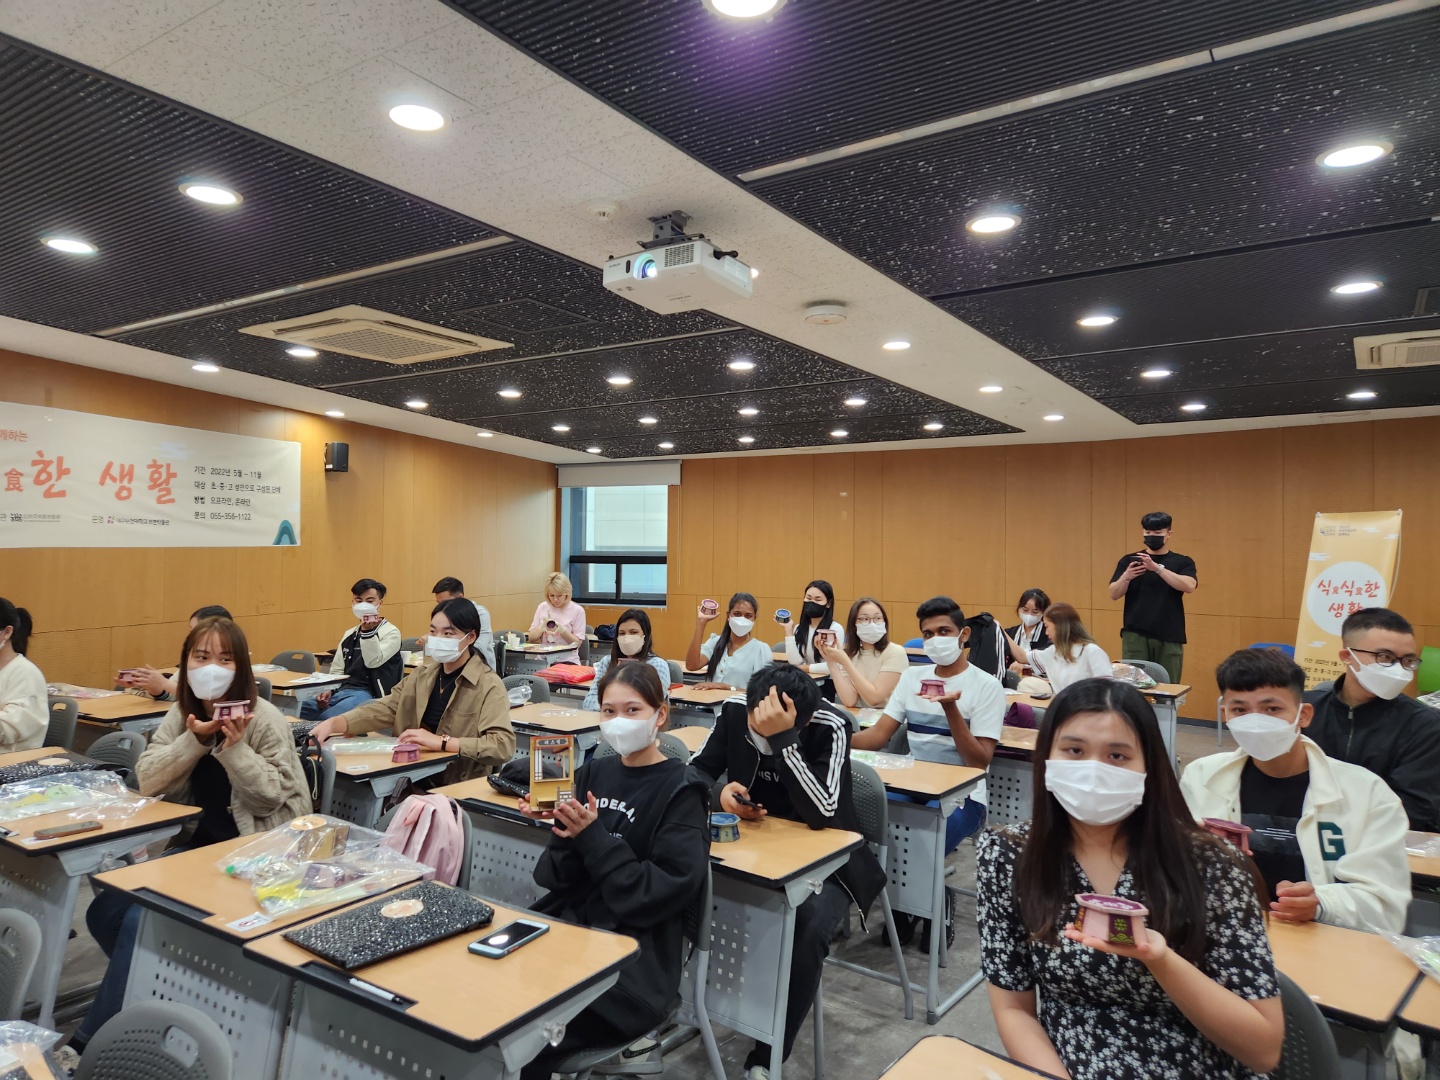 대구보건대 외국인 유학생들이 대학 보현박물관에서 개최하는 ‘식(食)식食한 생활‘ 프로그램에 참여하고 있는 모습